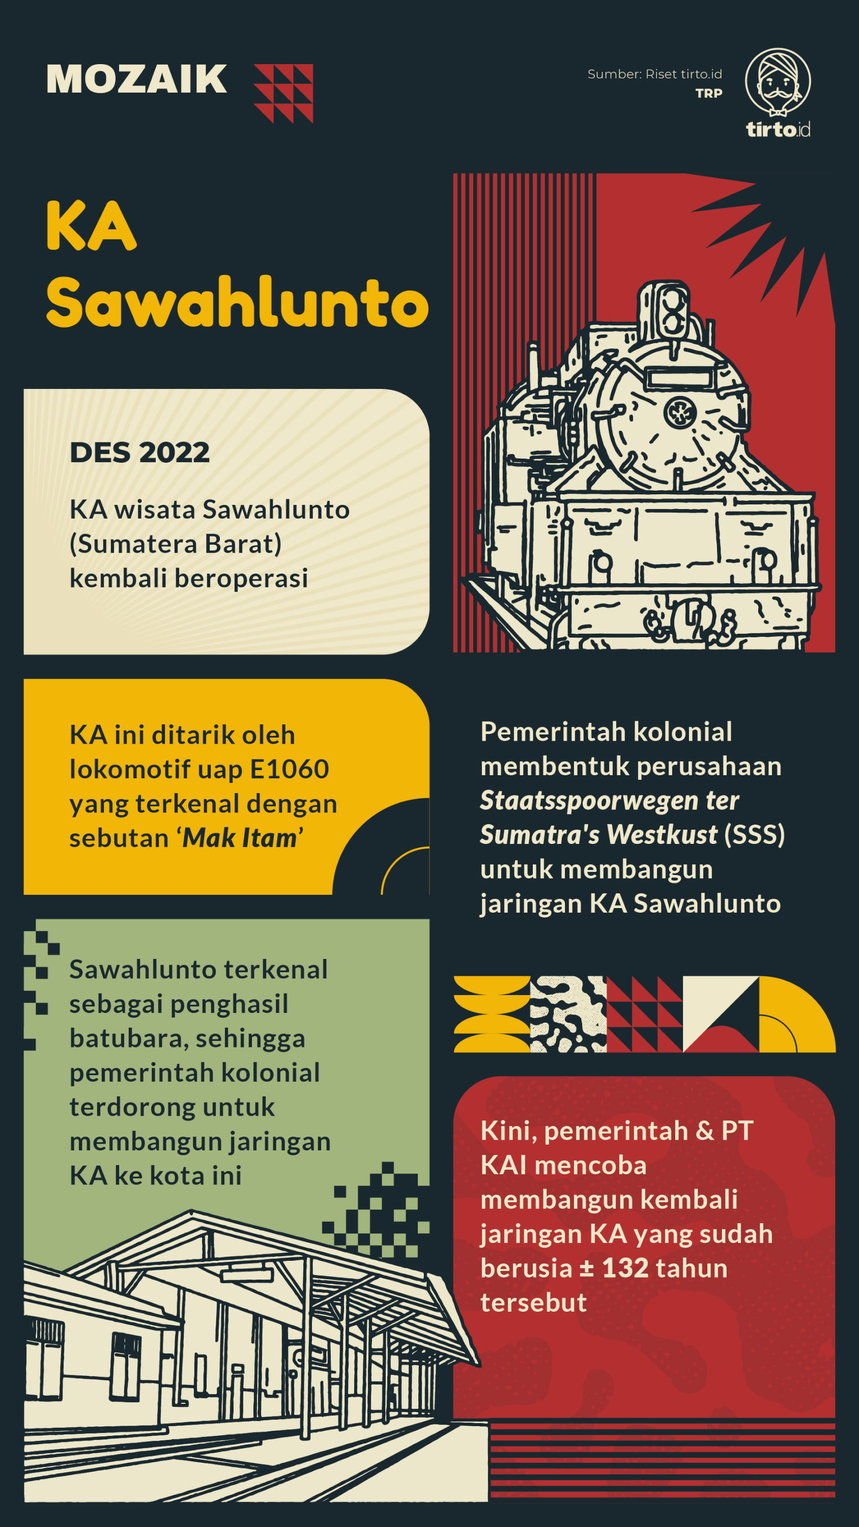 Infografik Mozaik KA Sawahlunto